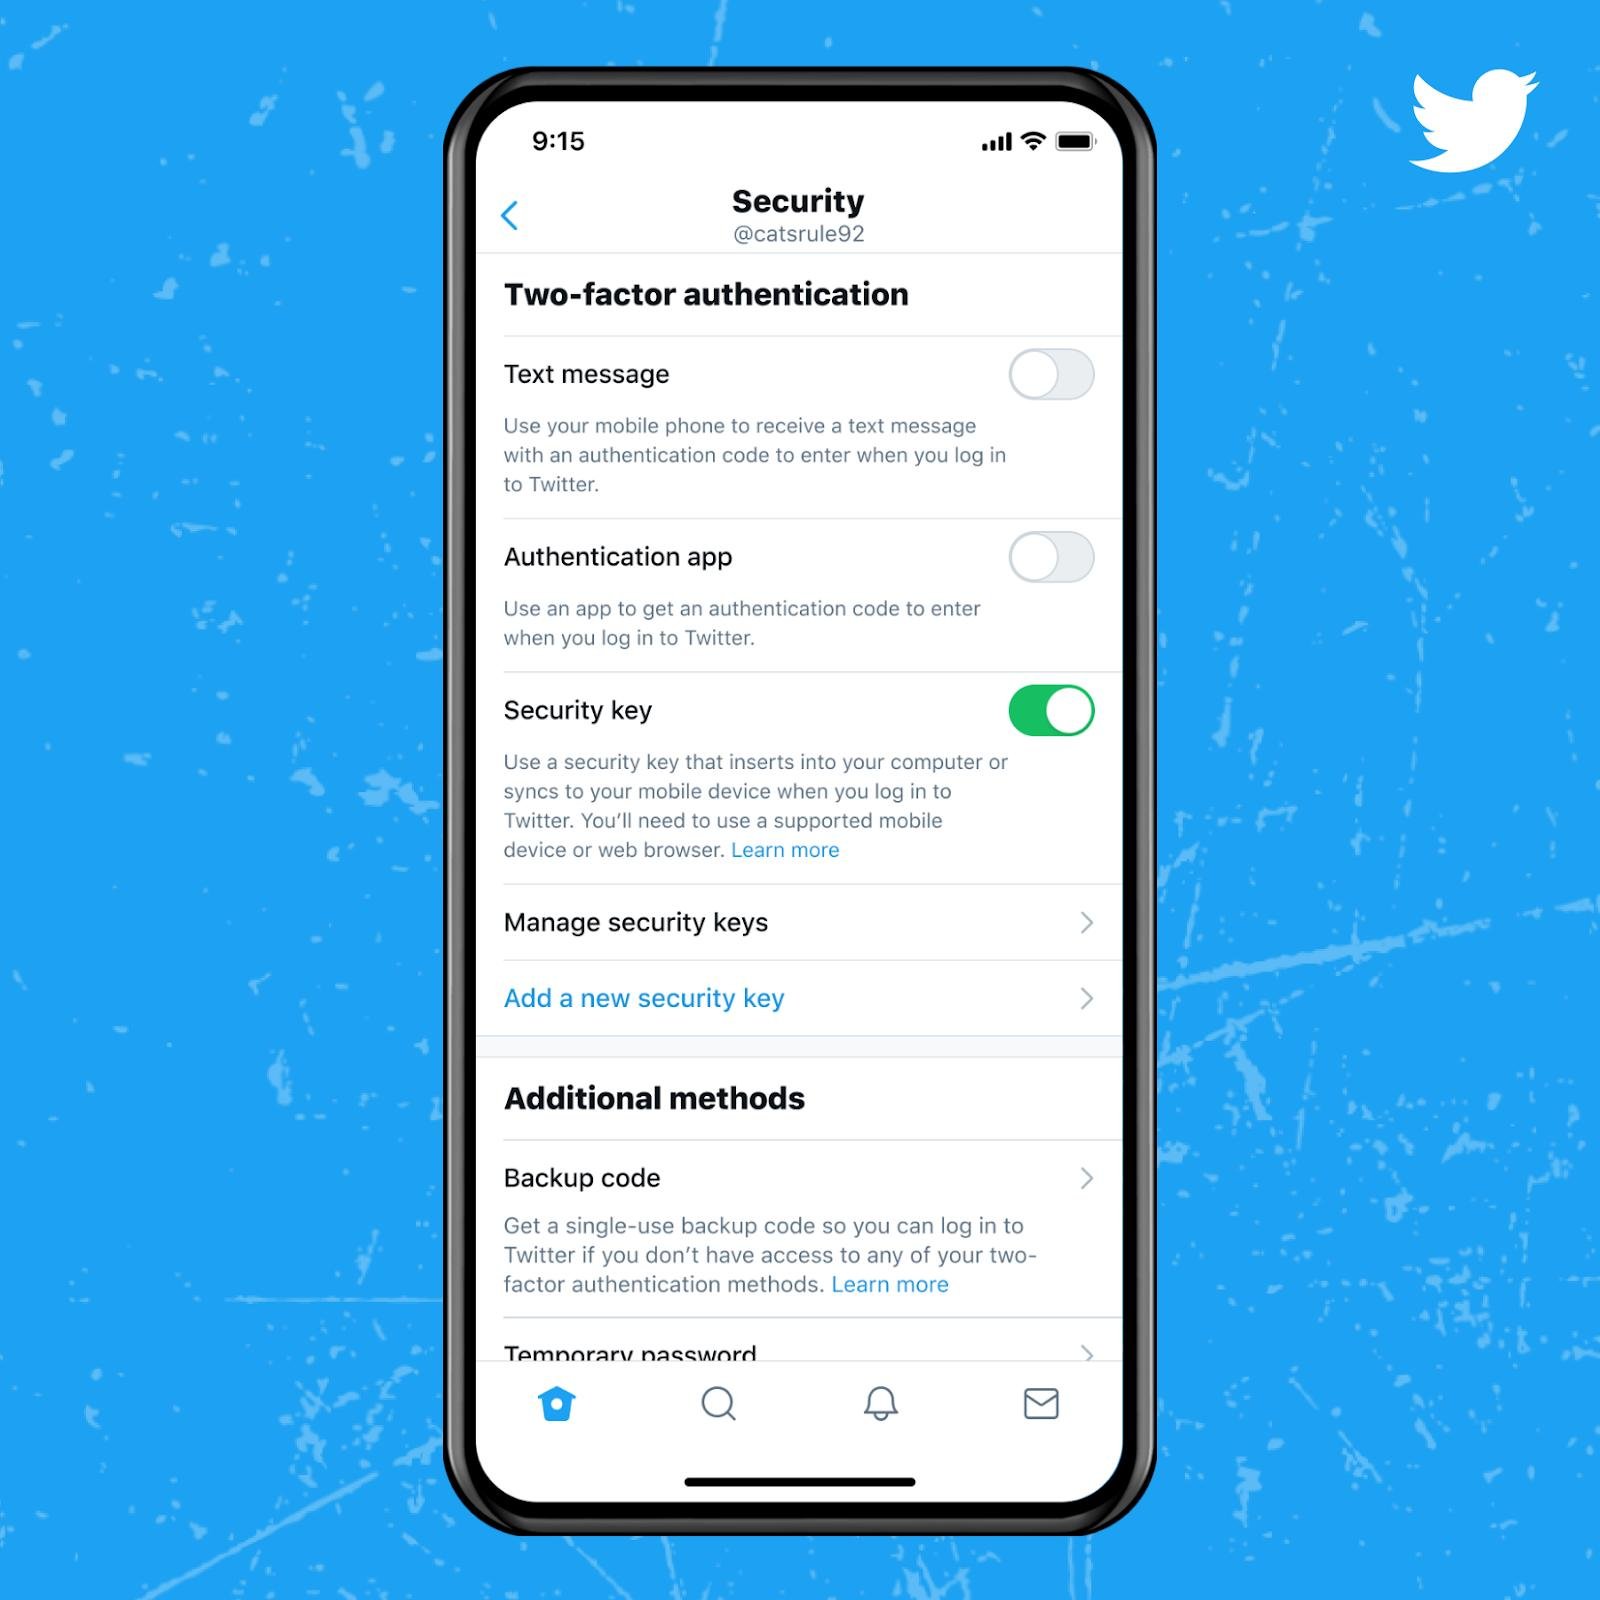 Idec argumenta que Twitter deve fornecer alternativa segura e gratuita para acesso dos usuários à plataforma. (Fonte: Twitter/Divulgação)